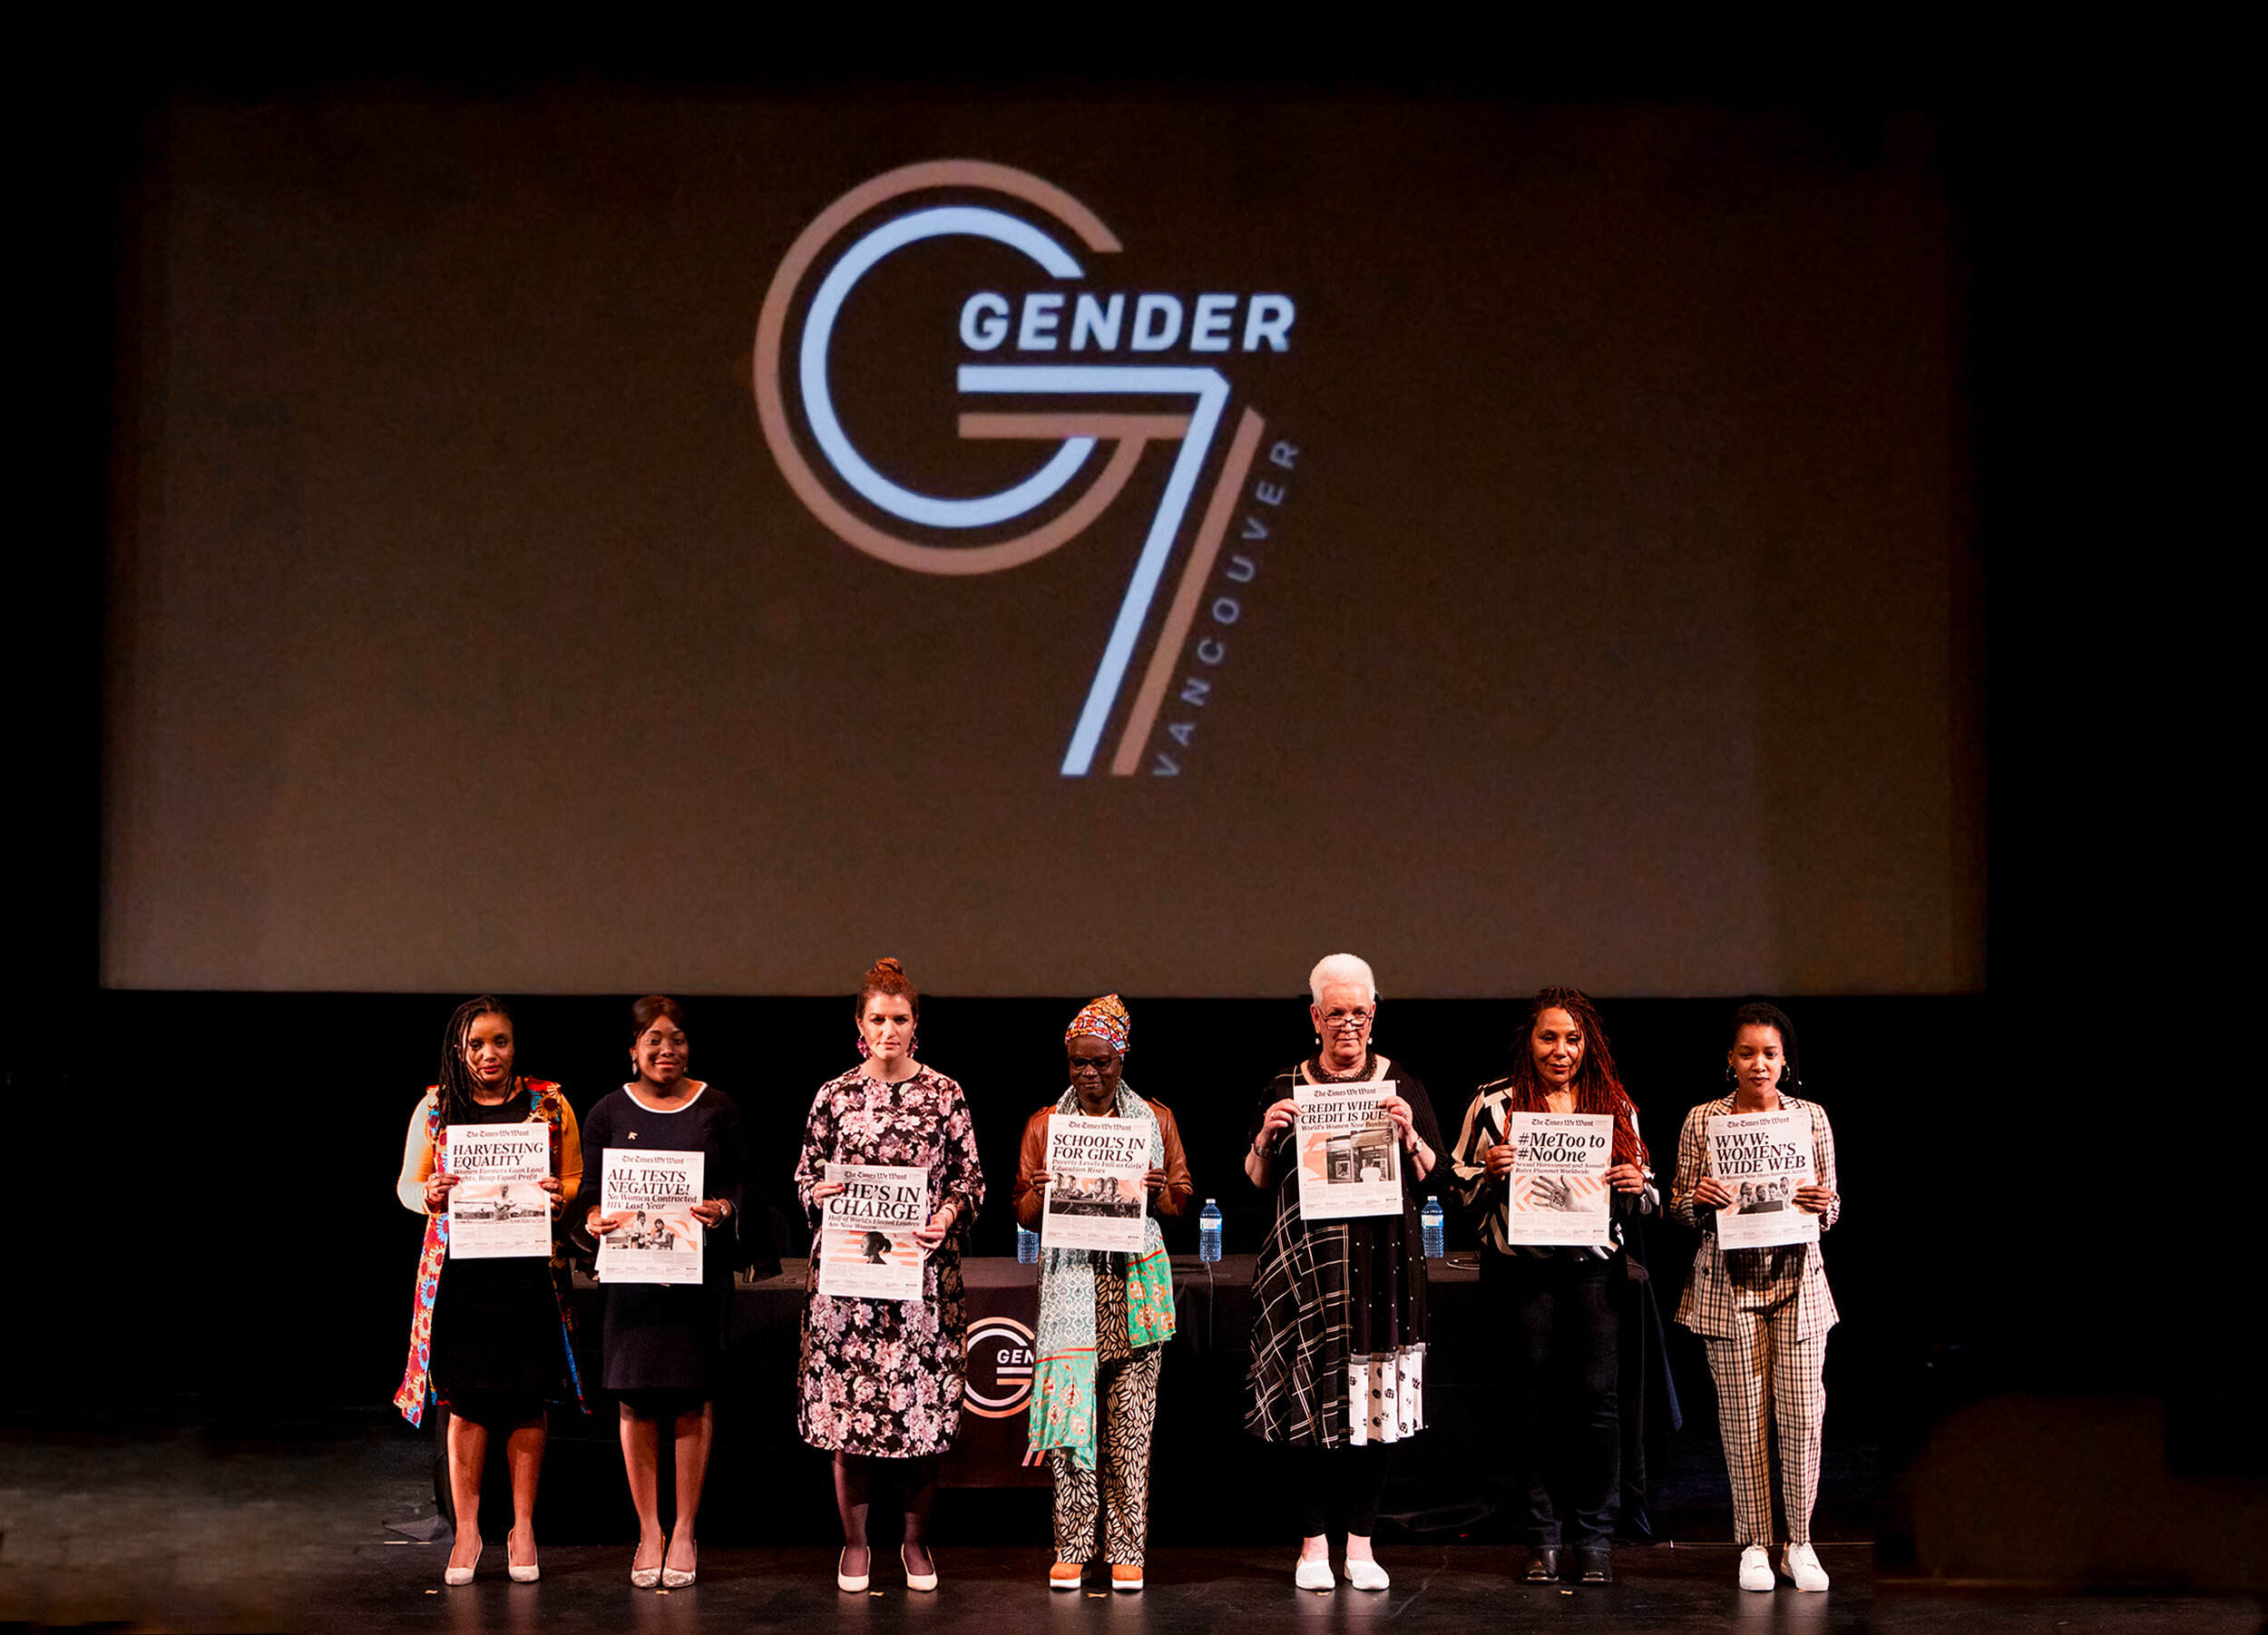 Gender-7-Event-Vancouver_71.jpg